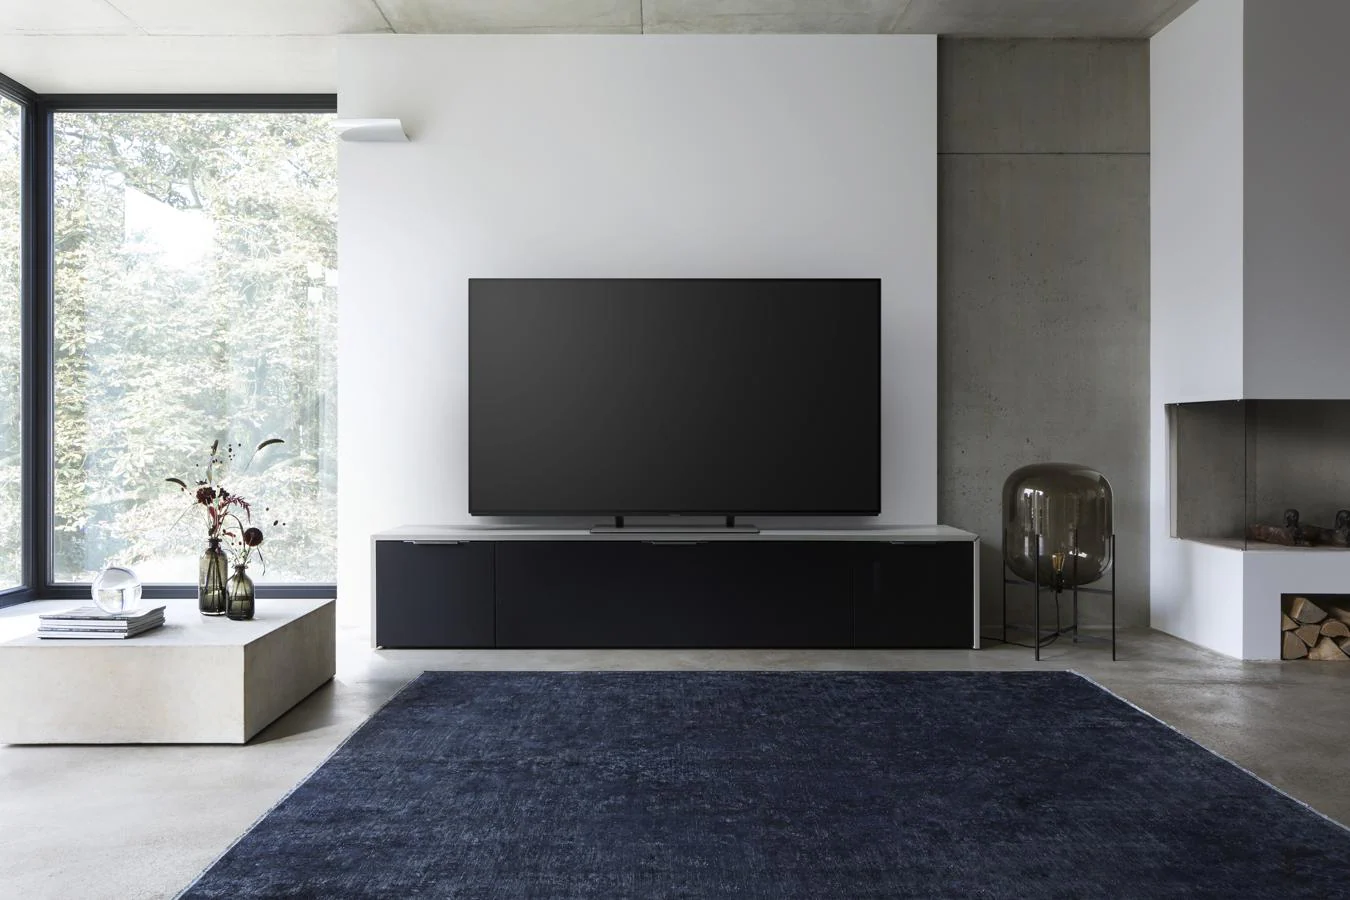 Para cinéfilos. Sorprende a los aficionados al cine montándole el suyo propio en casa con un televisor digno de cualquier sala. Modelo EZ950 de 65”. (Precio: 5.499€).